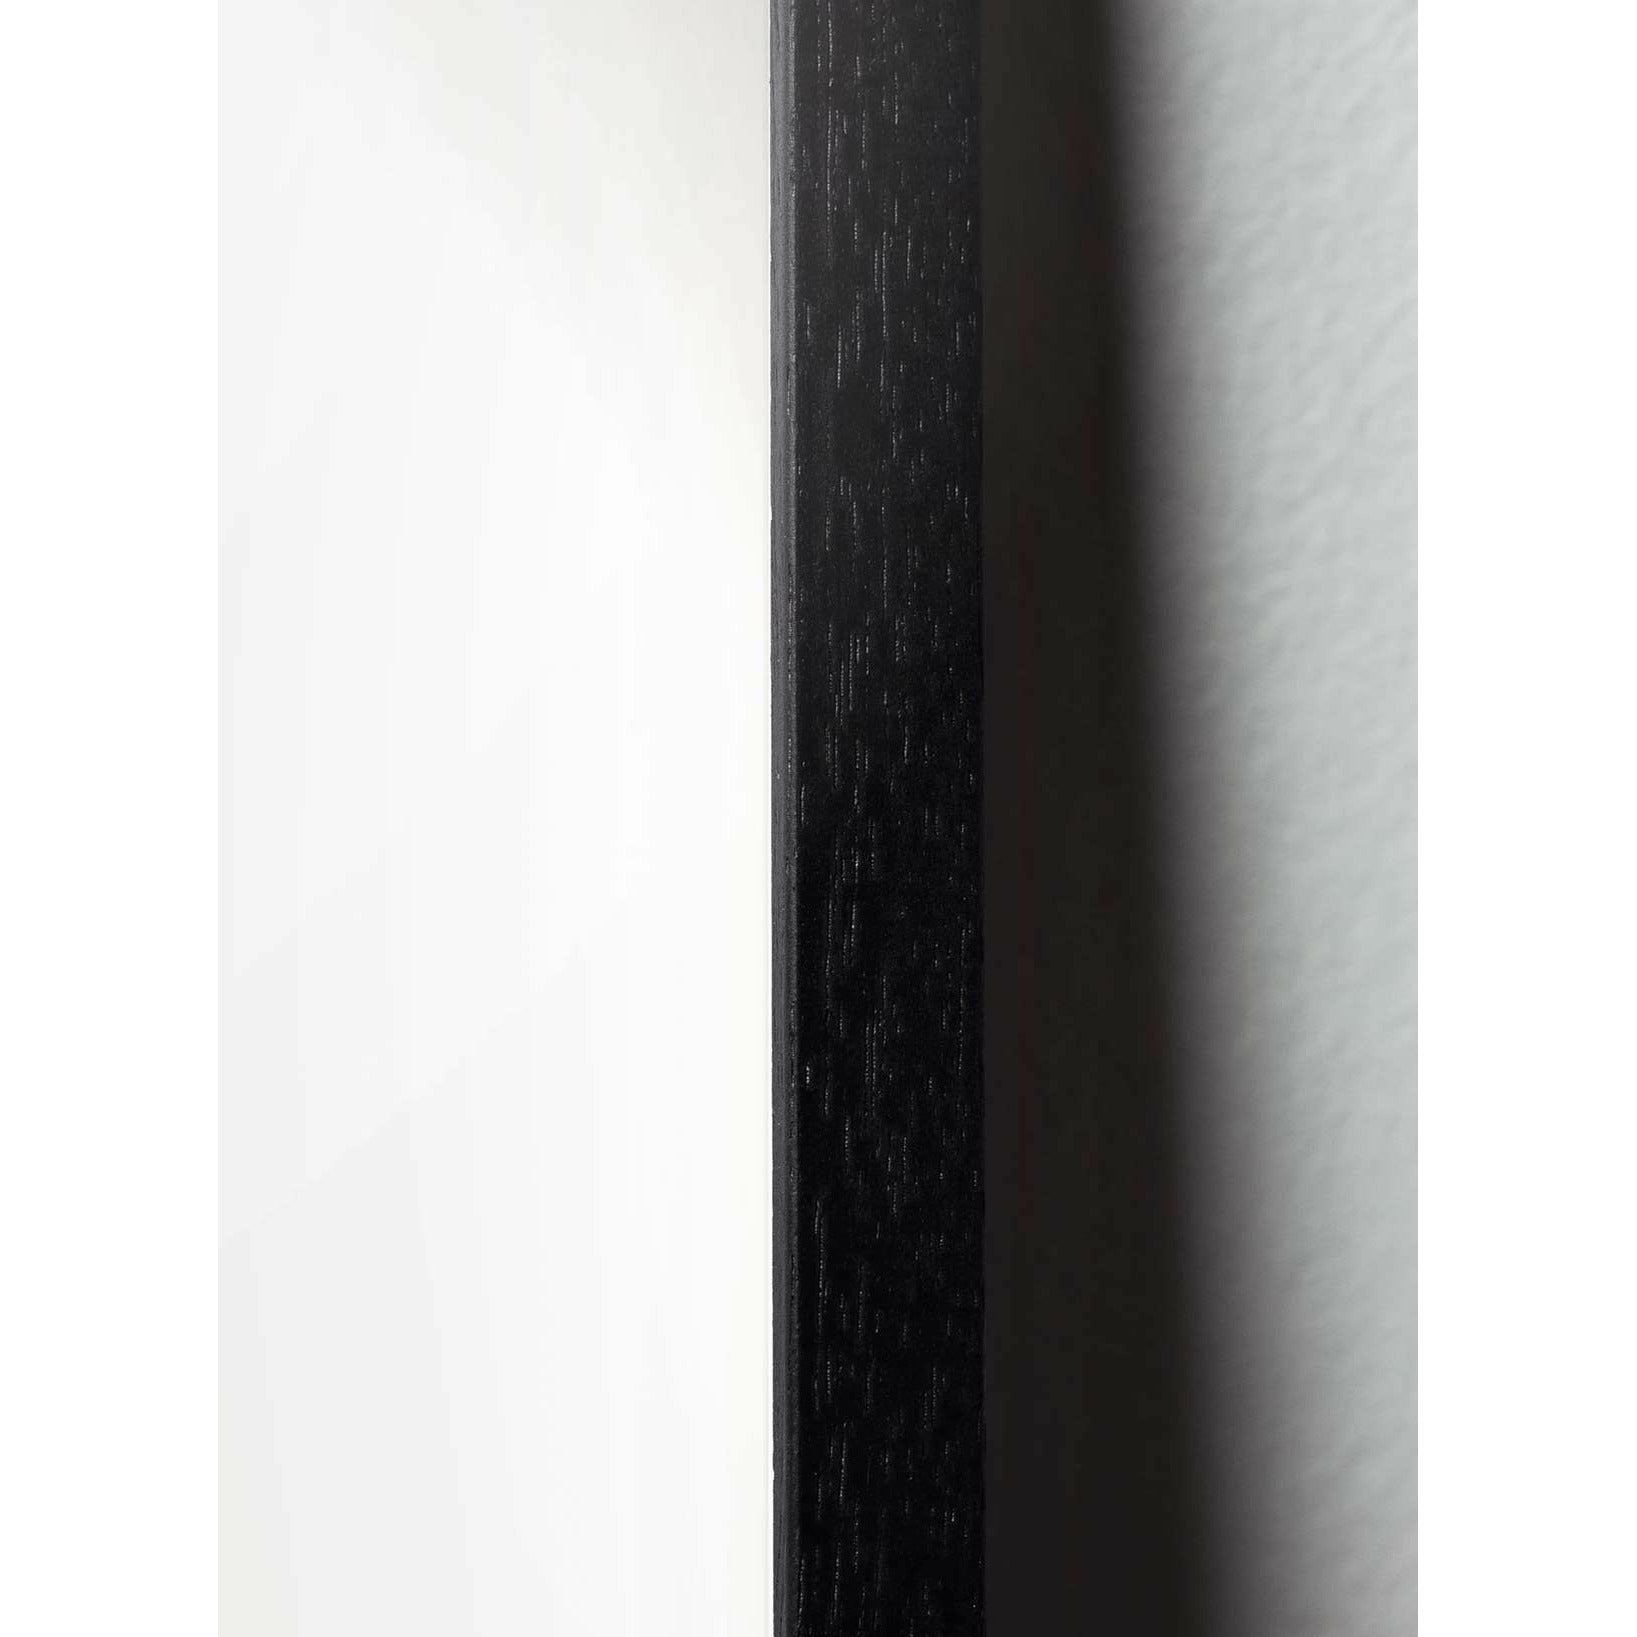 Brainchild Pelikan Classic Poster, Rahmen aus schwarz lackiertem Holz 70x100 cm, schwarzer Hintergrund